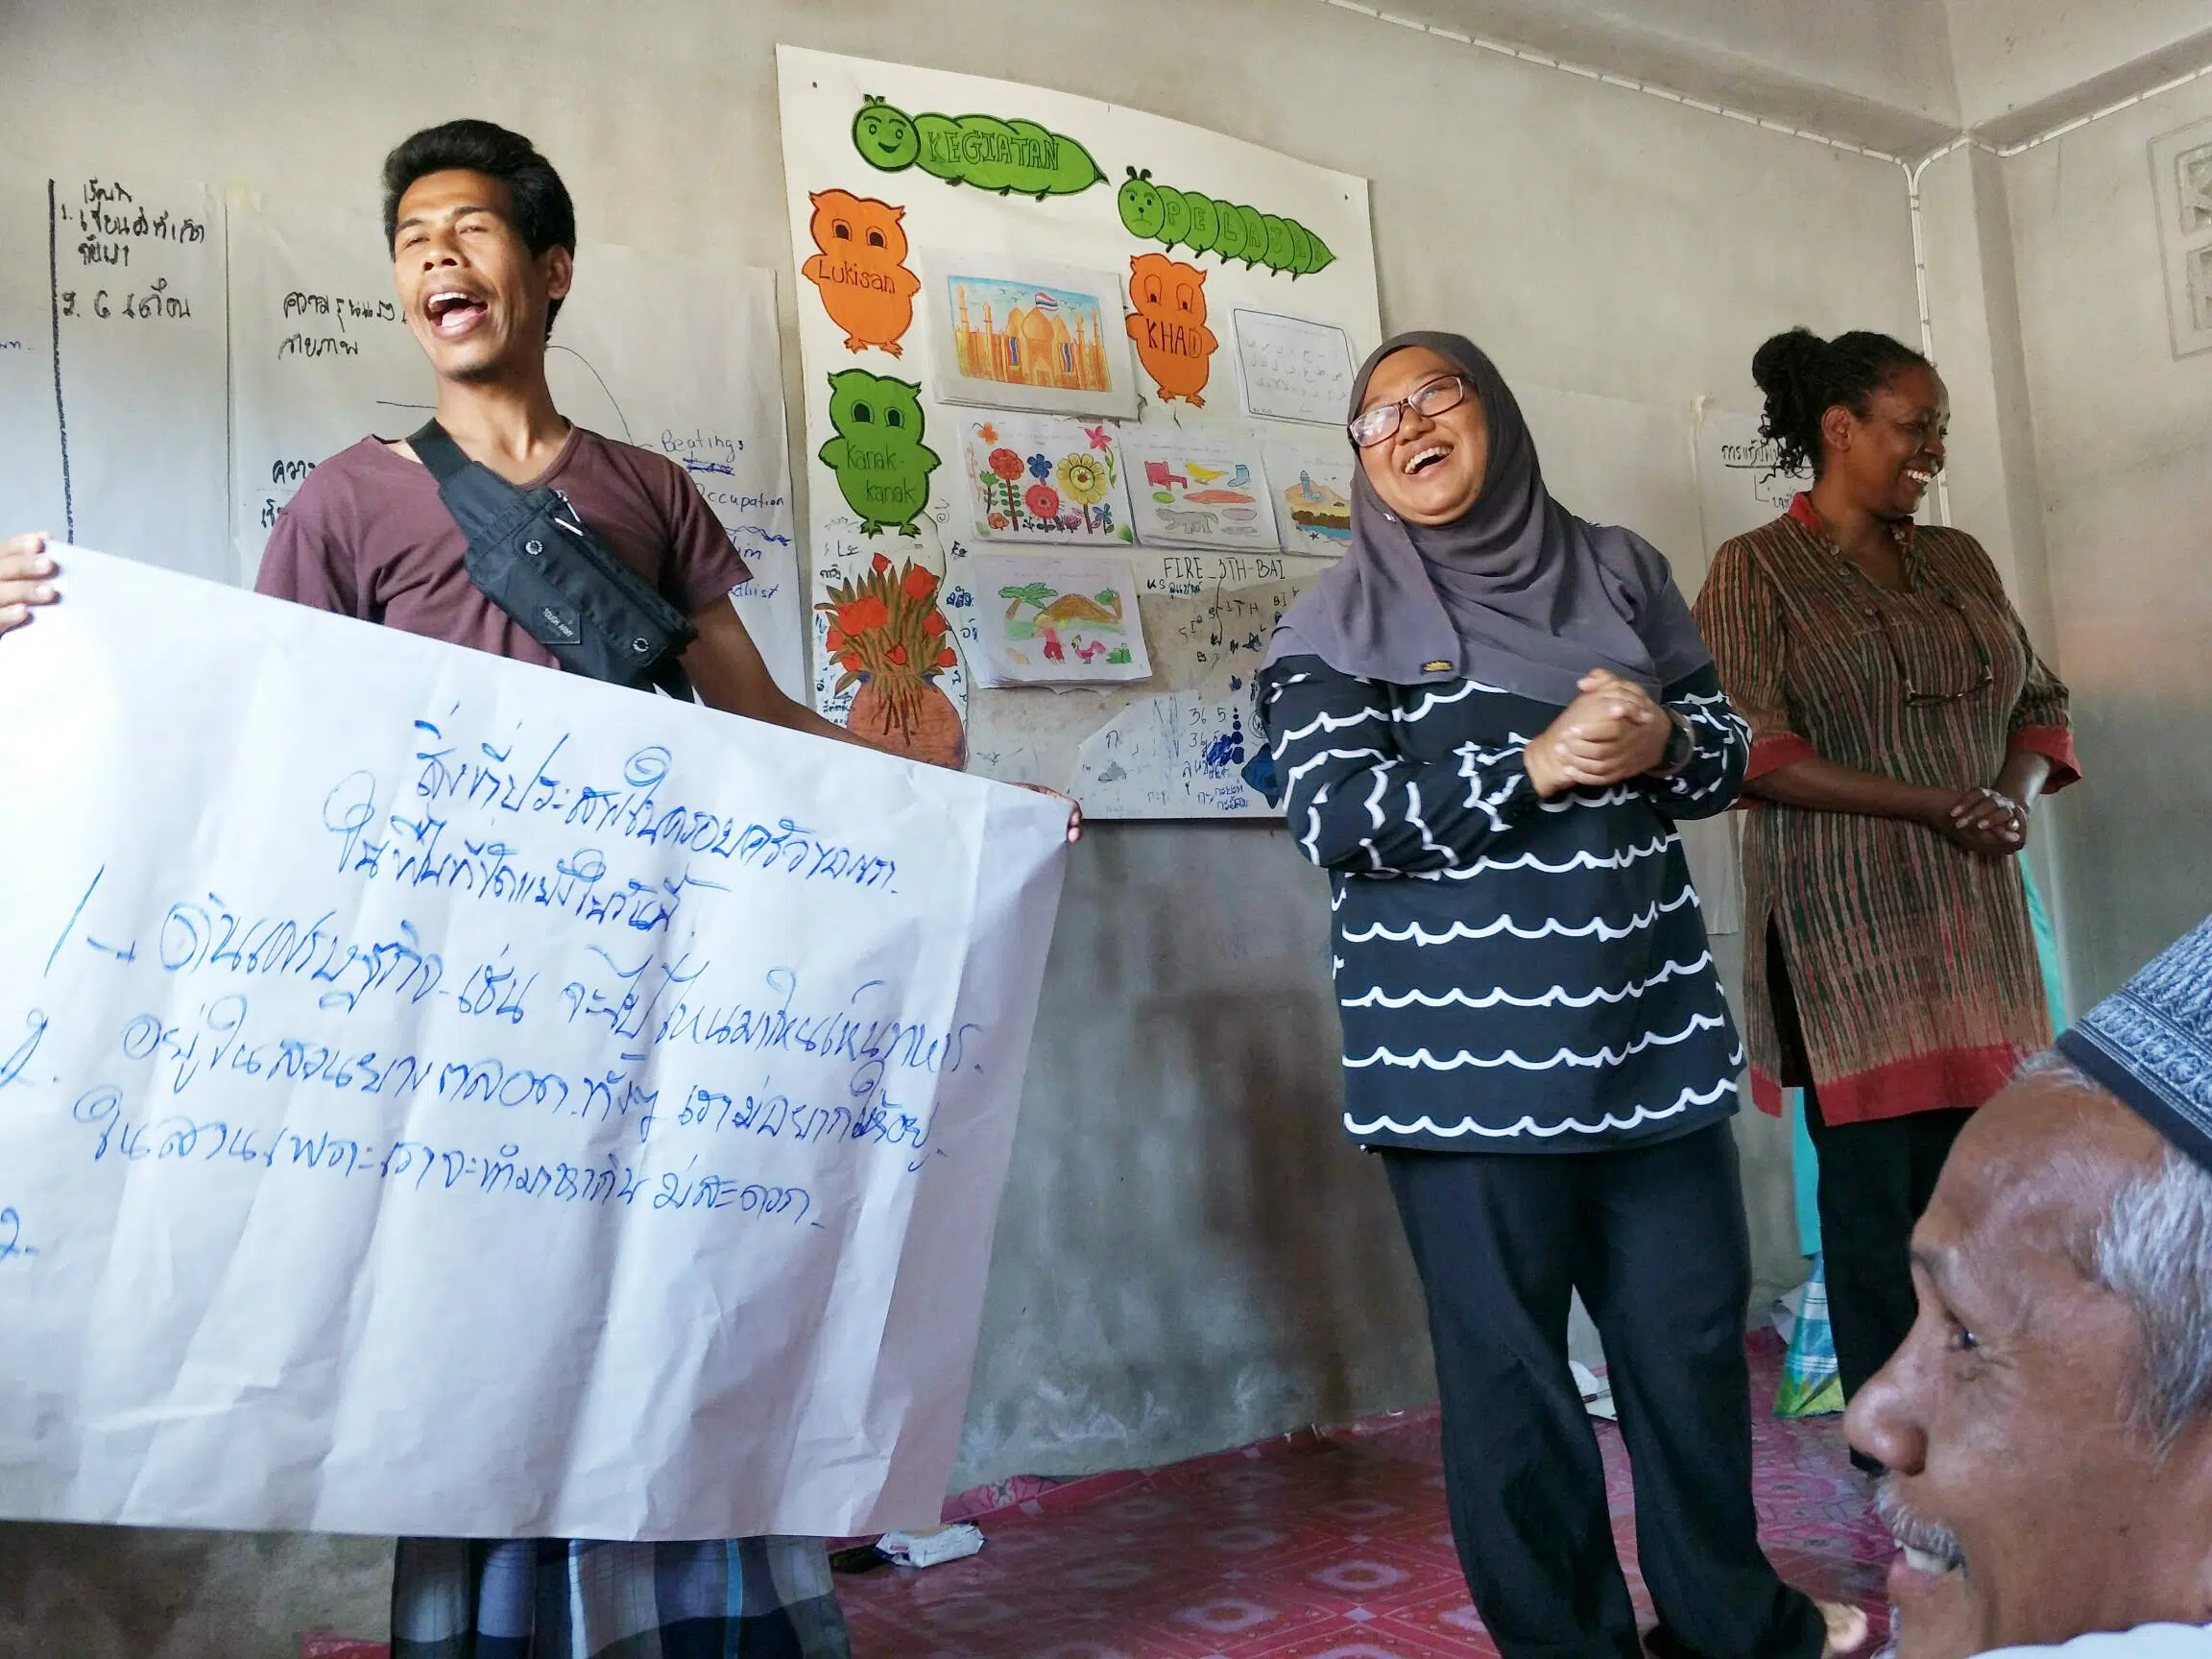 Zwei Menschen singen und lächeln und halten ein Schild mit thailändischen Buchstaben während eines Trainings in Südthailand. NP-Mitarbeiter lächeln neben zwei Personen.